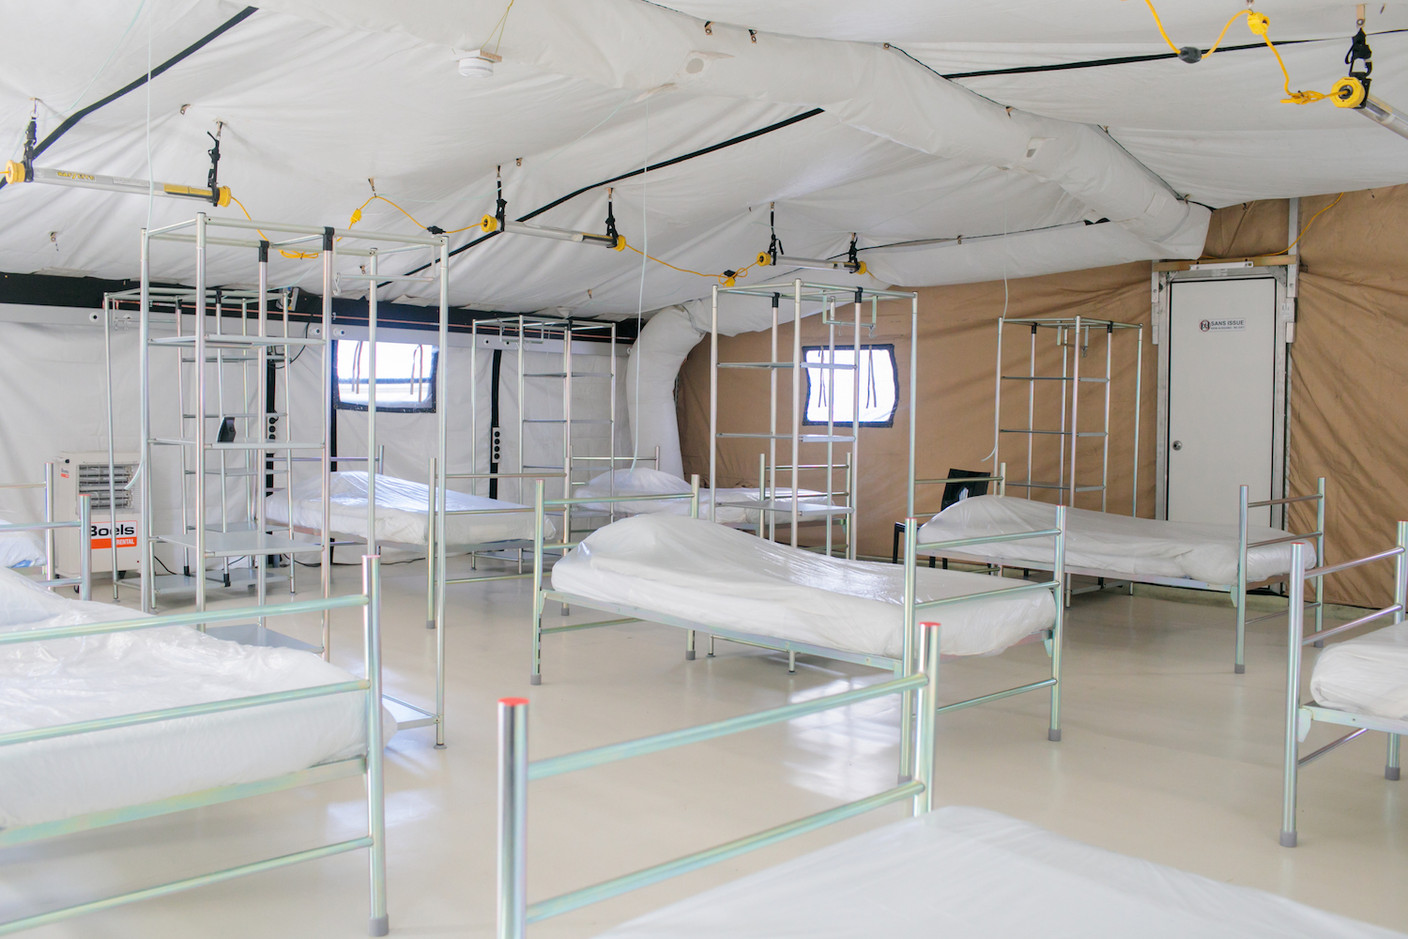 Au total, 80 lits, dans quatre tentes, permettent d’accueillir des patients dans des conditions proches de l'hébergement «en dur». (Photo: Matic Zorman)